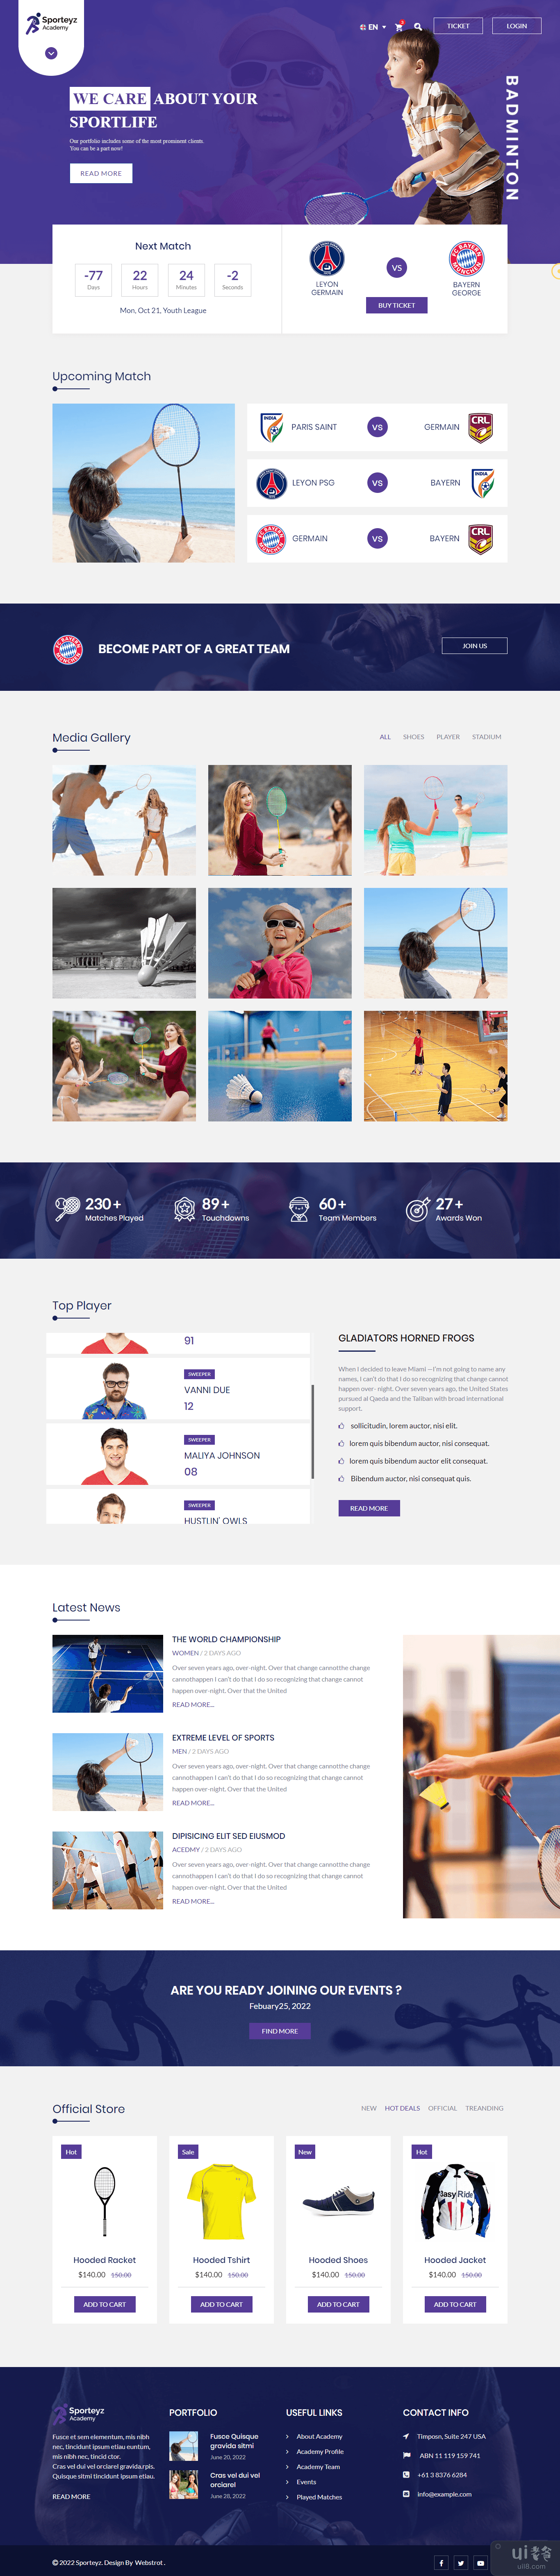 羽毛球 HTML 模板(Badminton HTML Template)插图2